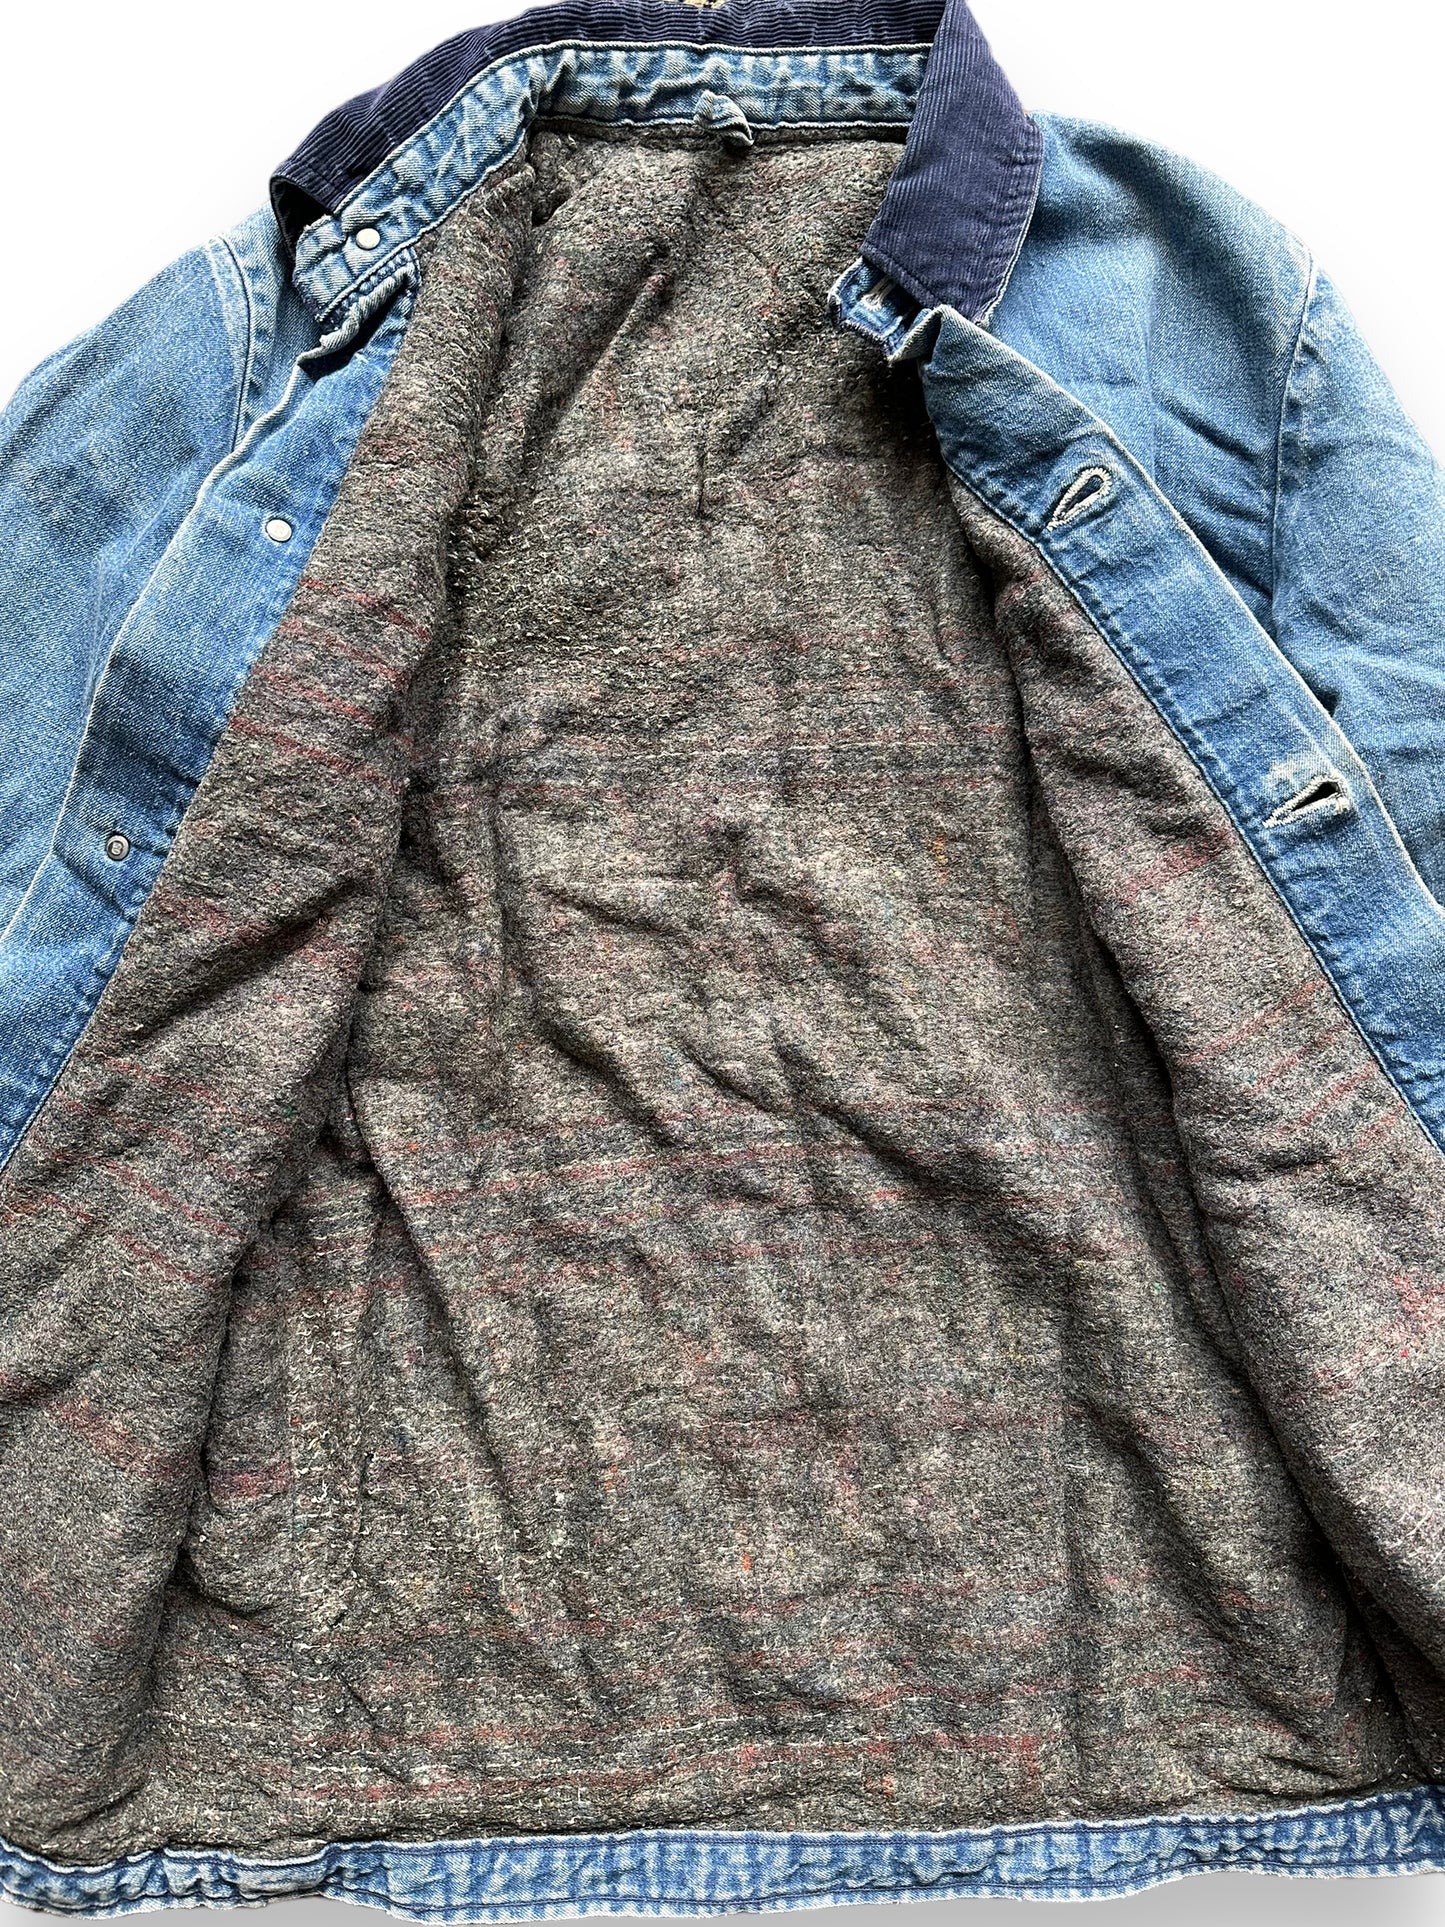 Liner Close Up on Vintage Wrangler Blanket Lined Denim Chore Coat SZ 34 | Seattle Vintage Workwear | Barn Owl Vintage Seattle